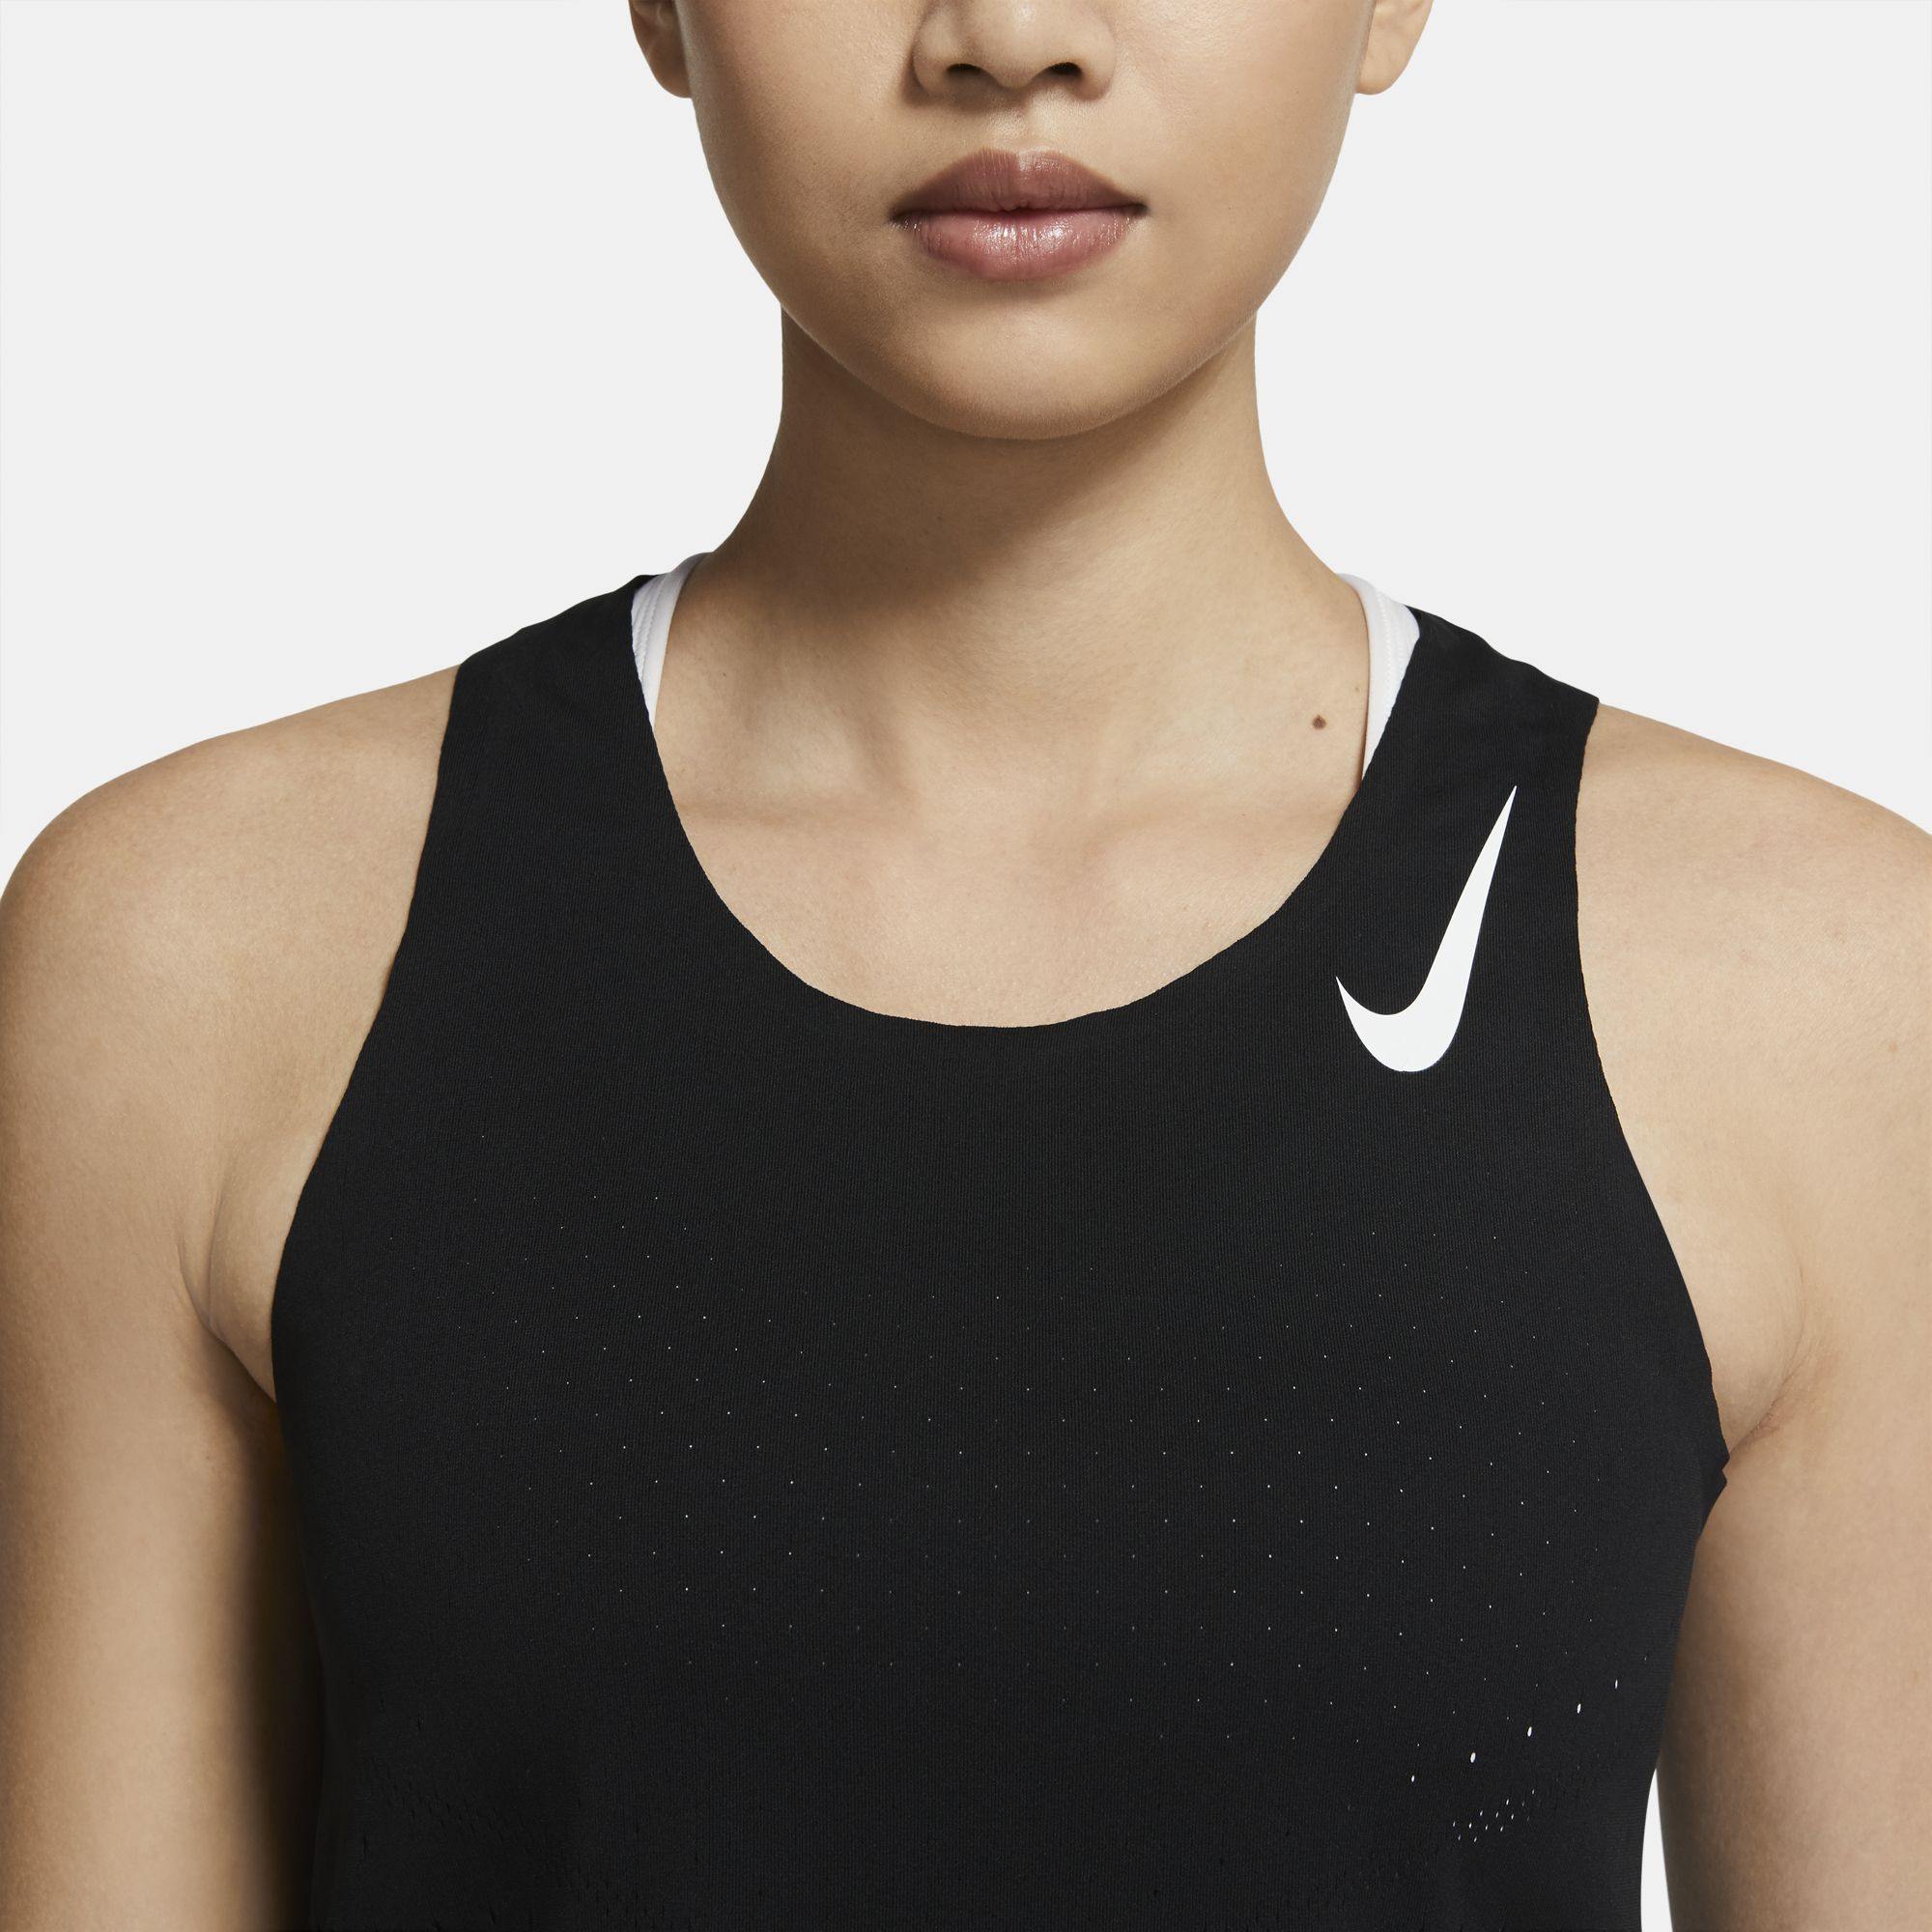 Nike Dri-Fit Running Tank Women' s Size Small - Brand New w/tags